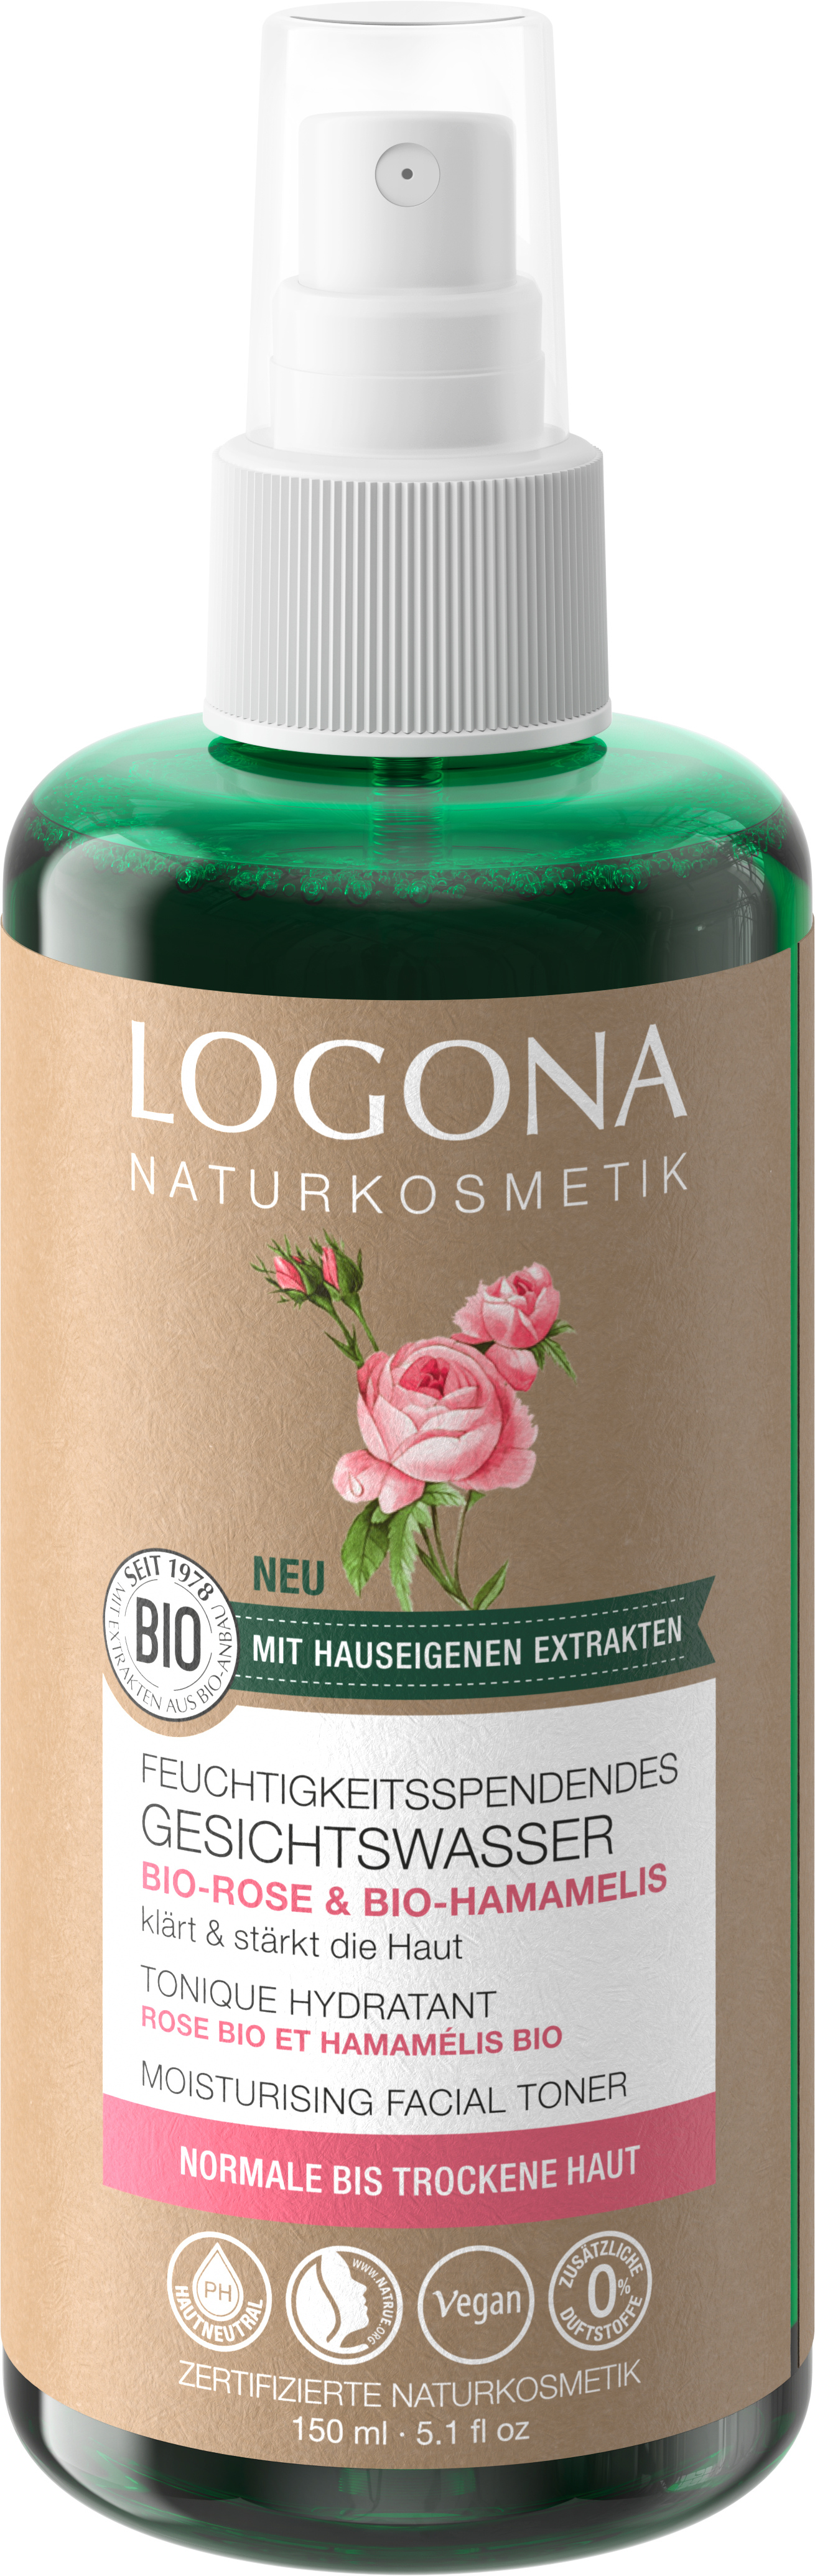 Feuchtigkeitsspendendes Gesichtswasser Bio-Rose & Bio-Hamamelis Naturkosmetik LOGONA 